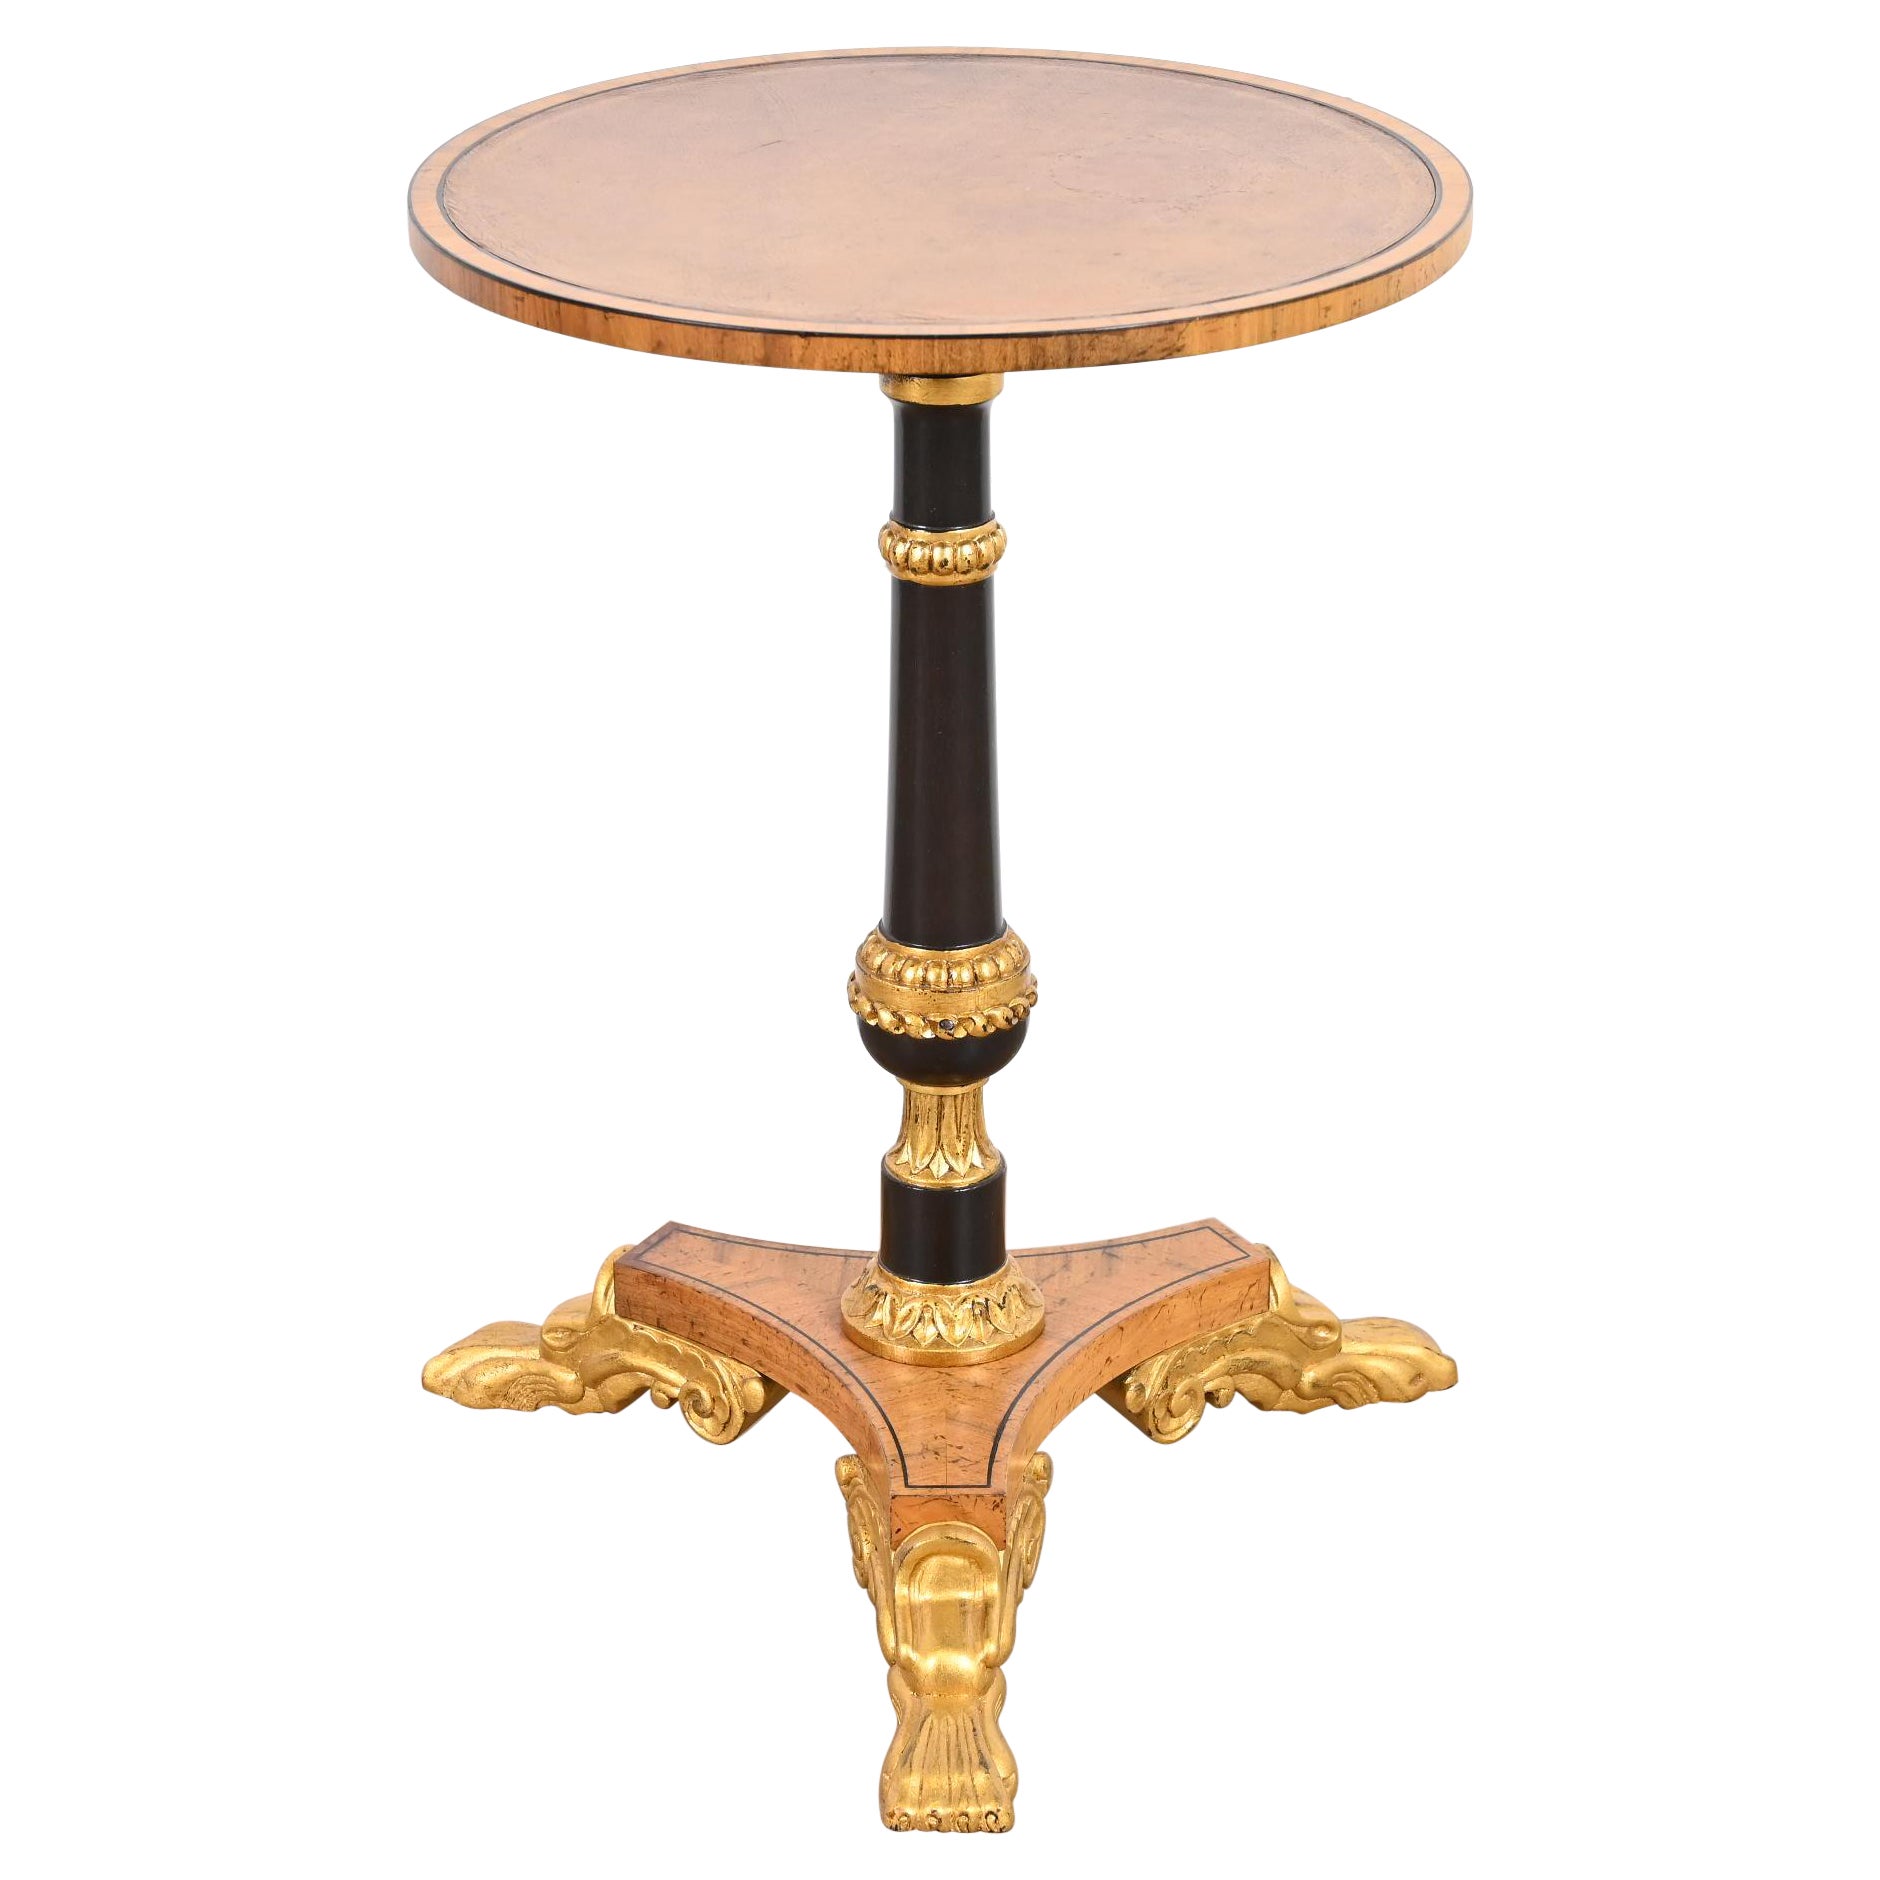 Table d'appoint sur piédestal Baker Furniture Stately Homes de style Régence en bois ébénisé et doré